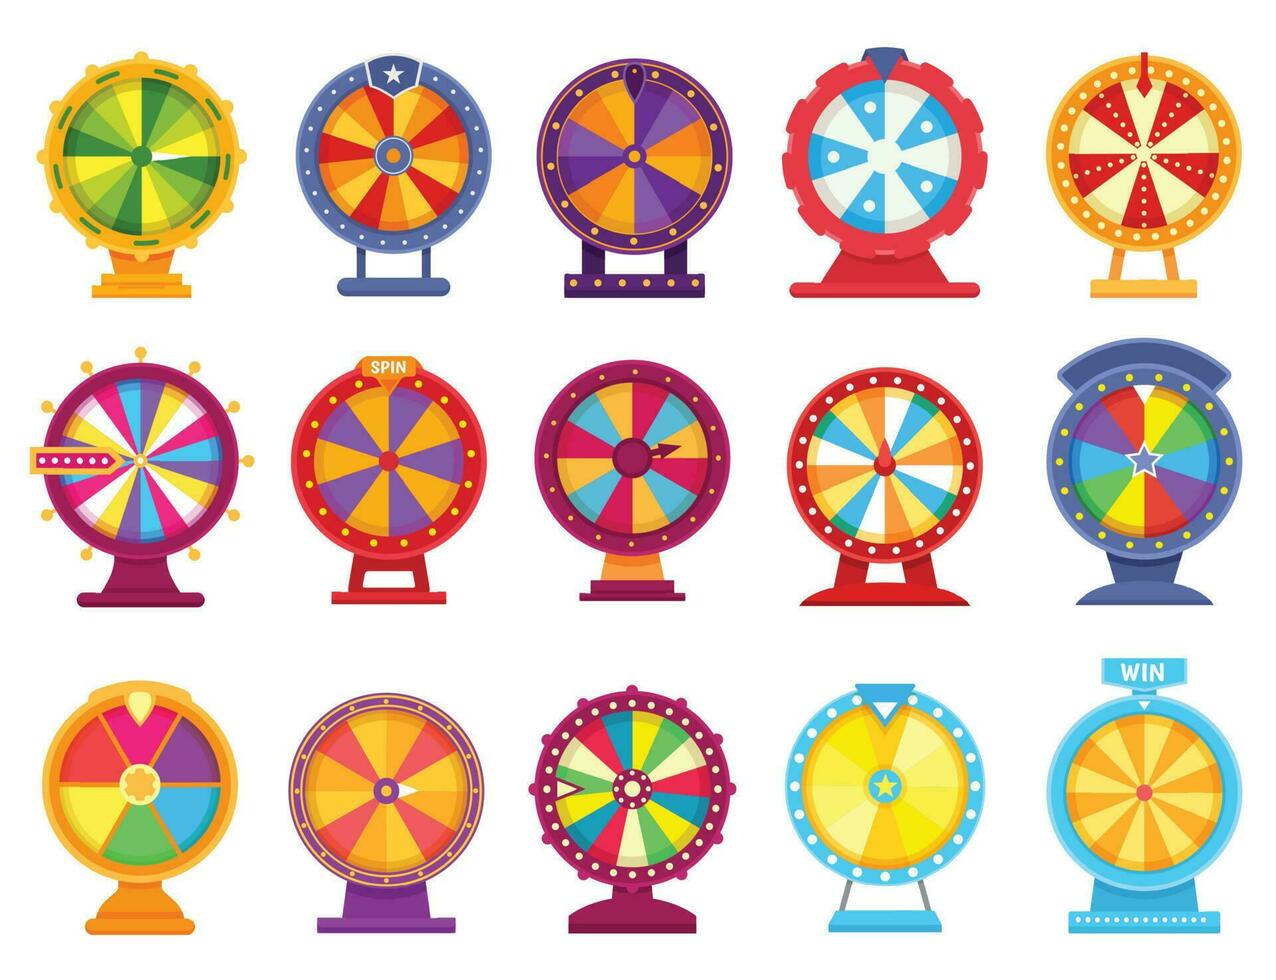 förmögenhet hjul, tur- spinning roulett, kasino snurra spel. färgrik pris- hjul, lotteri pris- rouletter spel, pengar hasardspel platt vektor uppsättning